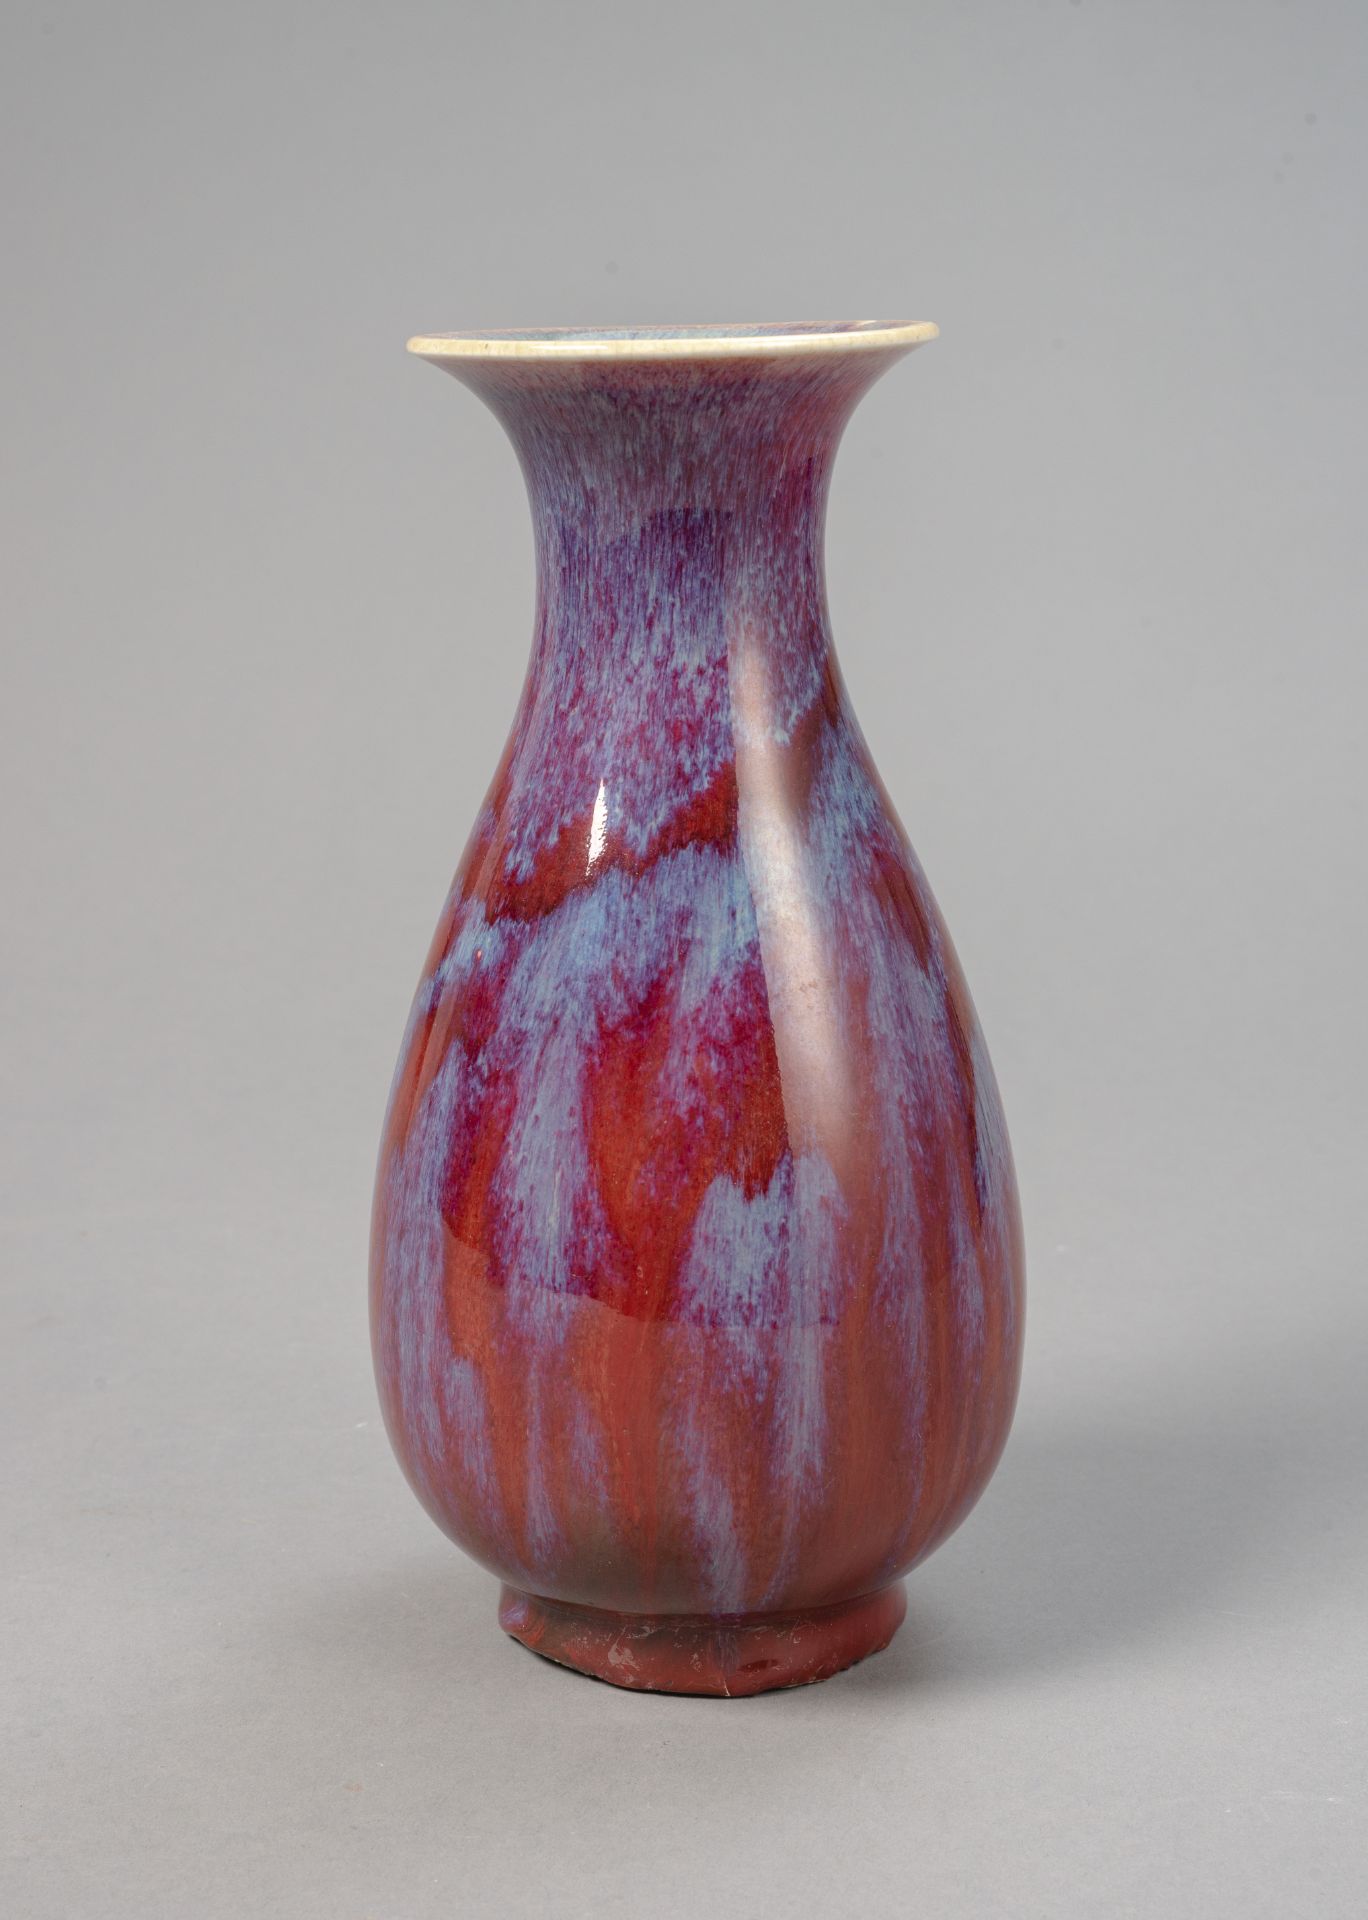 Birnenförmige Vase mit Flambé-Glasur - Bild 3 aus 4